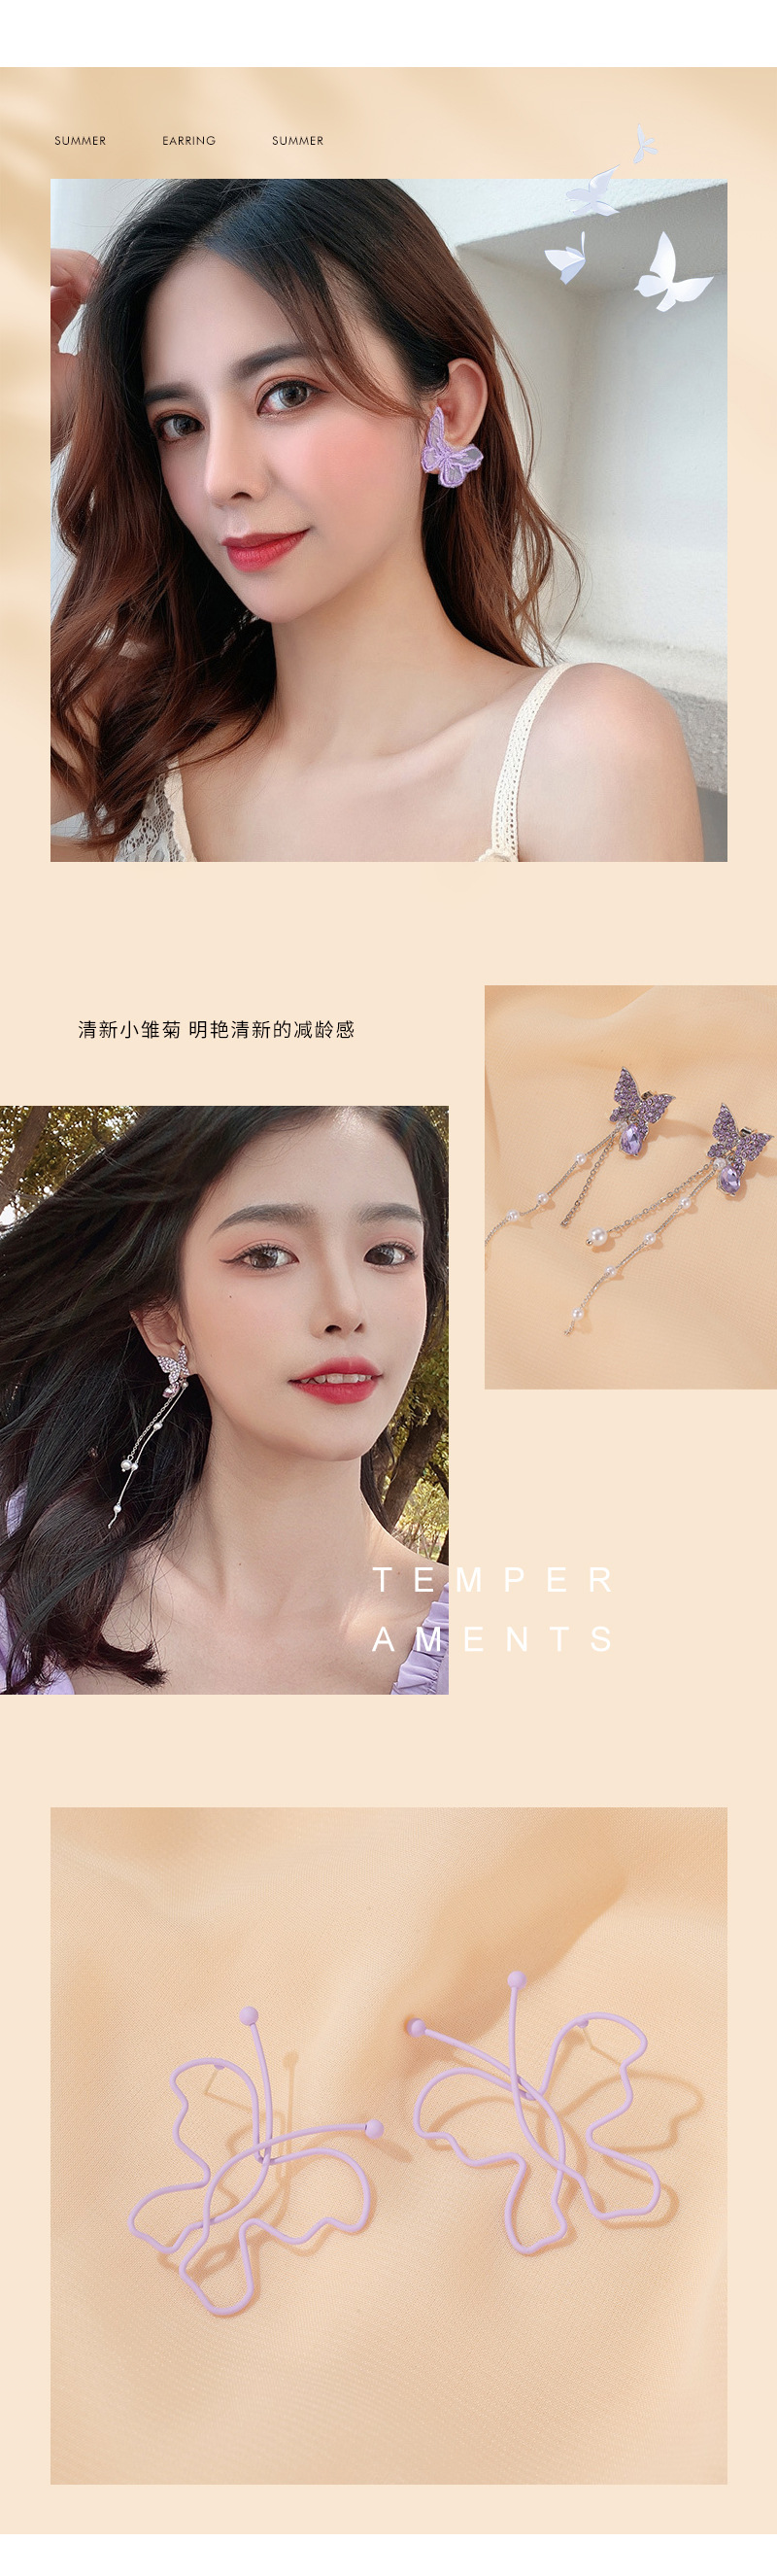 S925 silberne Nadel ohrringe Sommer neue lila Ohrringe einfache kleine frische Ohrringe Koreanische Version der NettoPromiBlumen ohrringepicture9